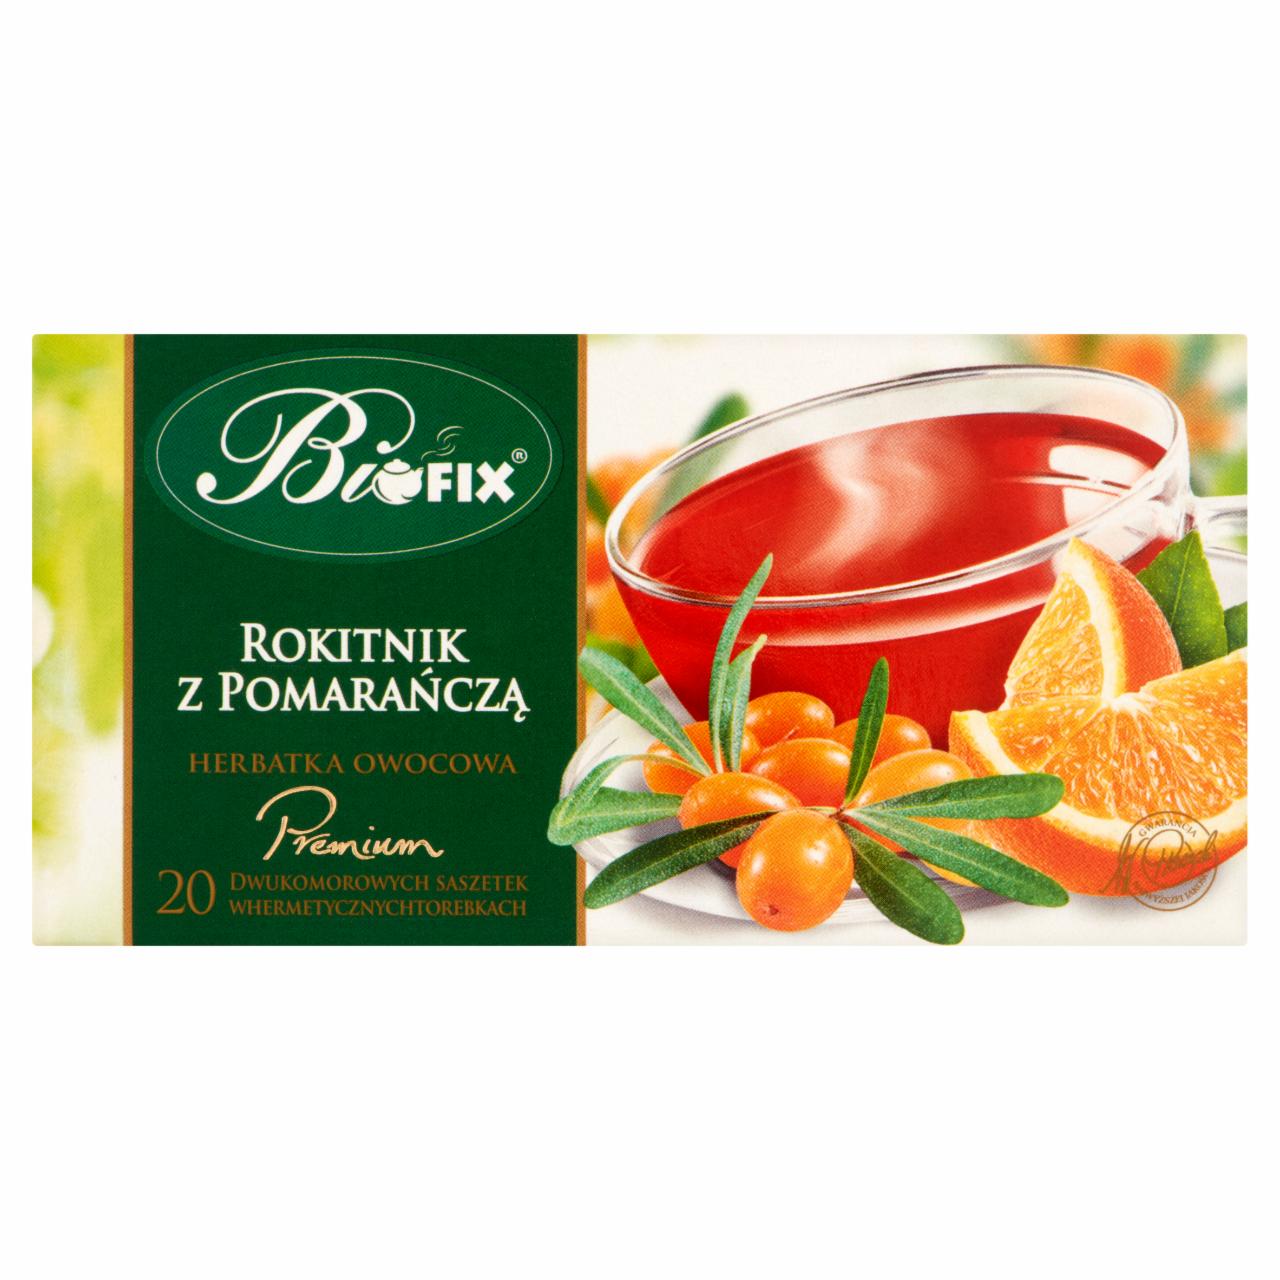 Zdjęcia - Bifix Premium Rokitnik z pomarańczą Herbatka owocowa 40 g (20 torebek)